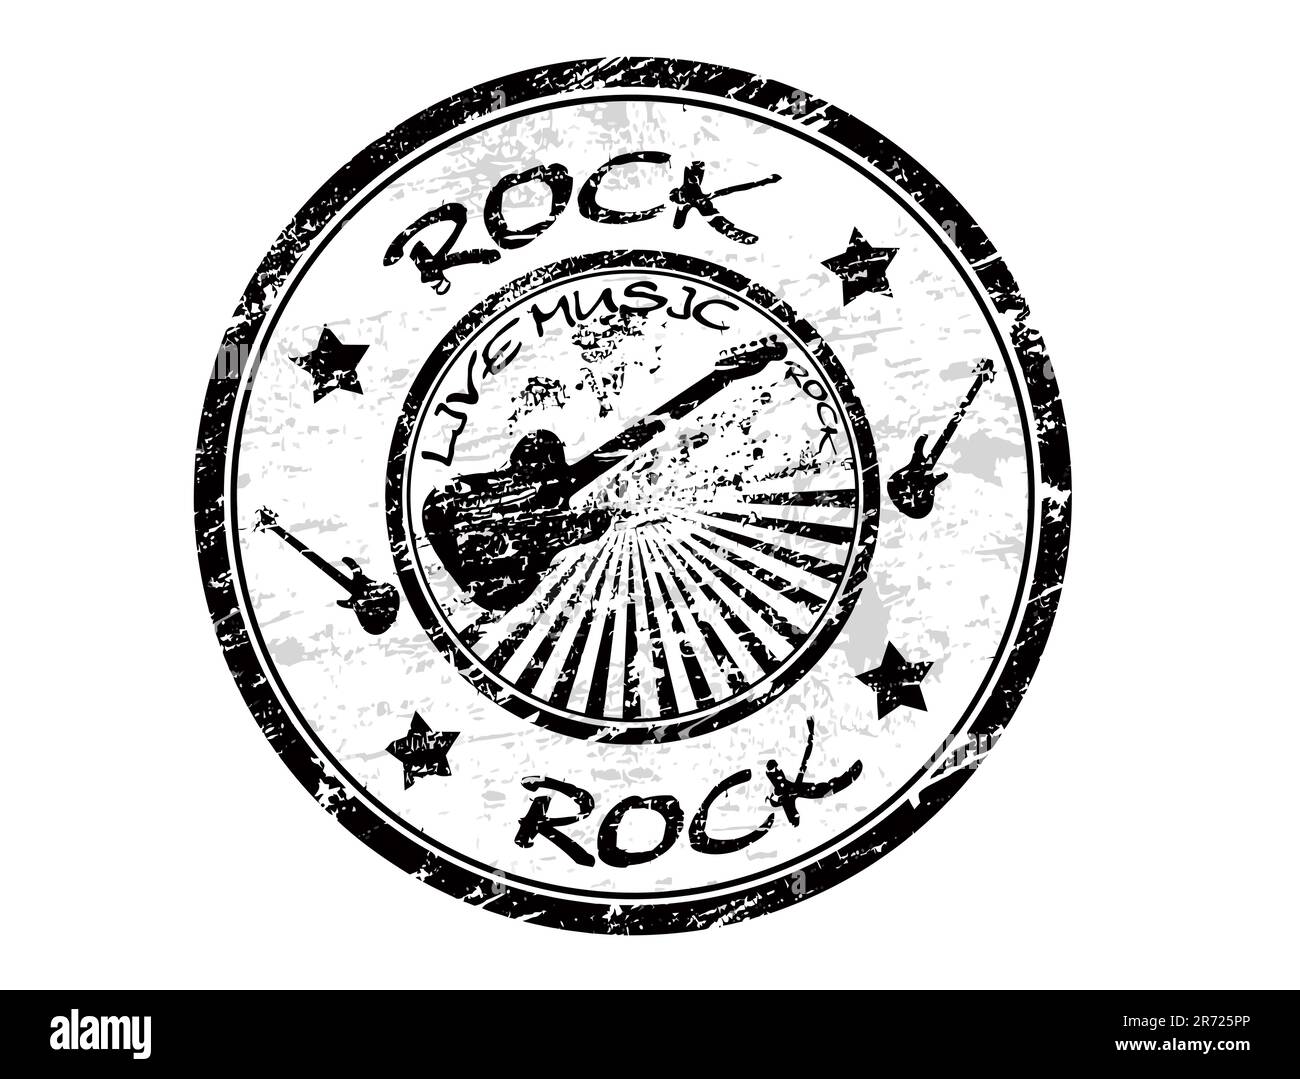 Grunge caoutchouc timbre avec la guitare et le mot Rock écrit à l'intérieur du timbre, illustration vectorielle Illustration de Vecteur